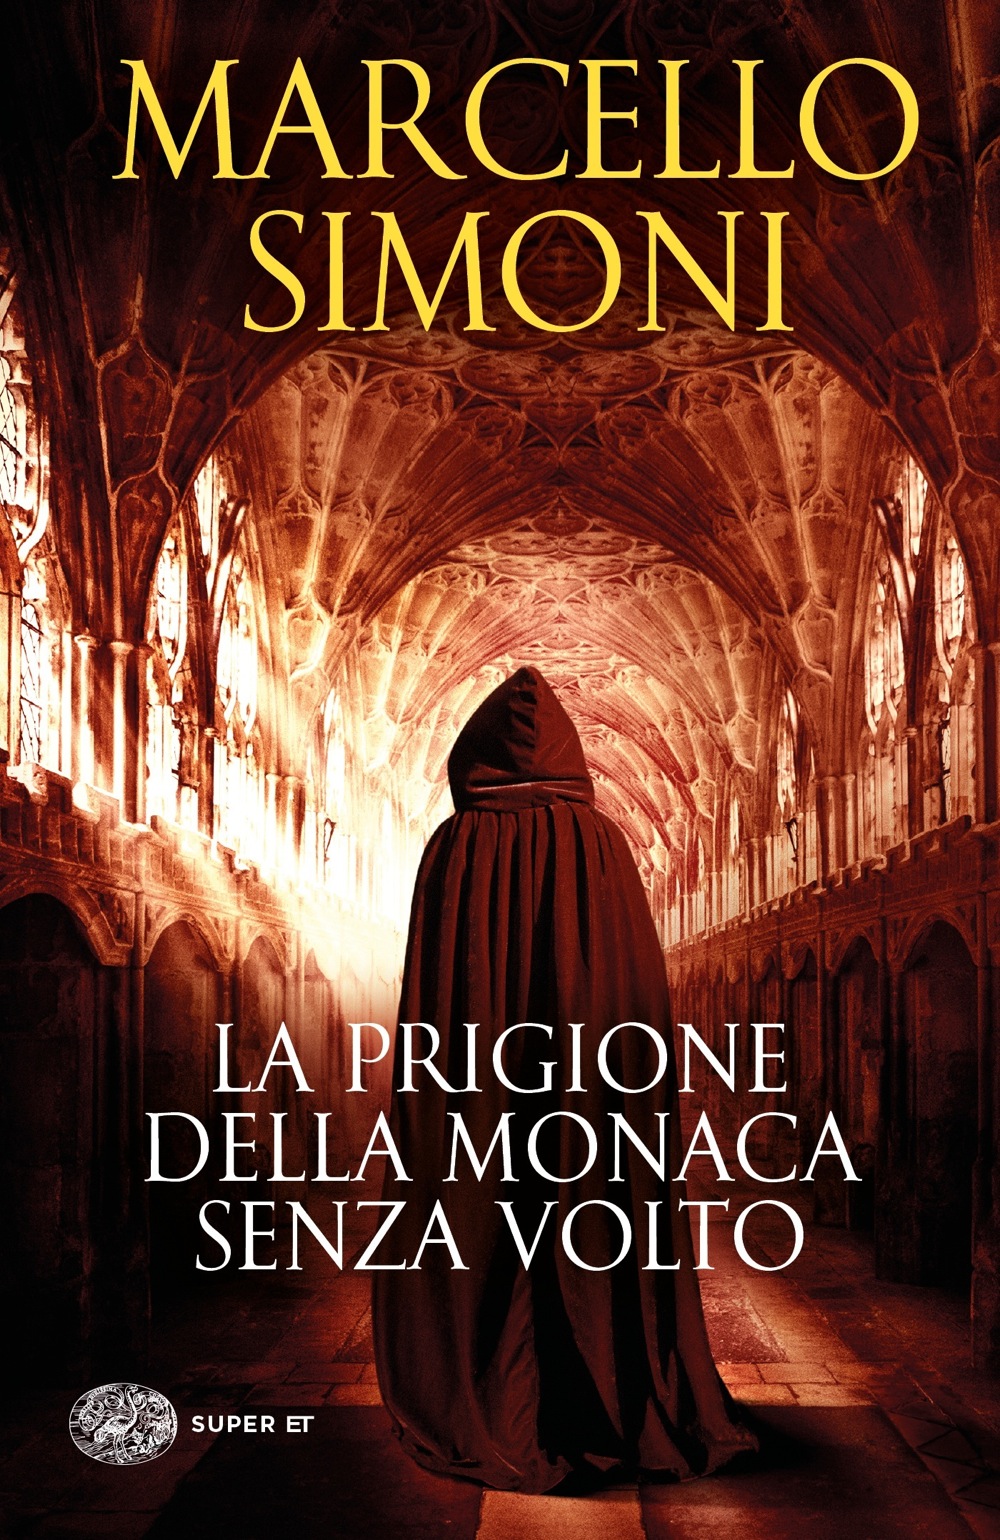 La prigione della monaca senza volto, Marcello Simoni. Giulio